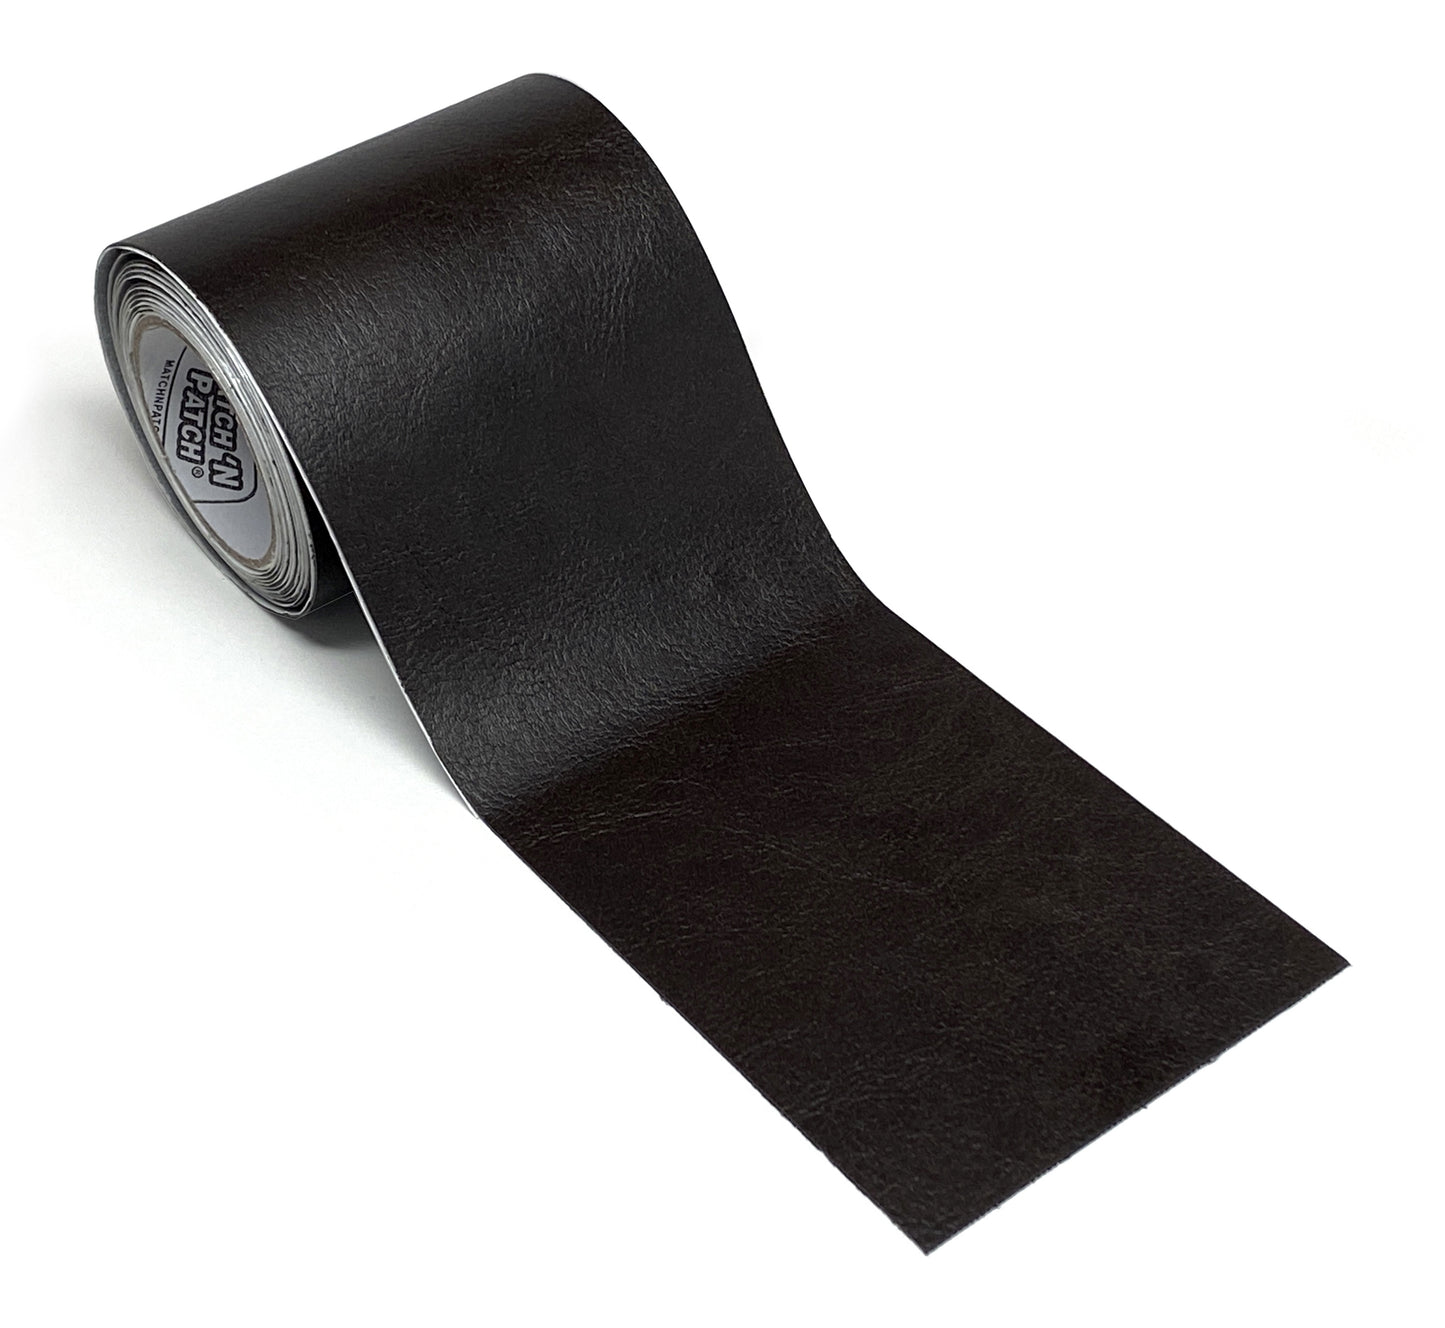 3 Inch X 72 Inch Self-Adhesive Leather Repair Tape, Dark Brown